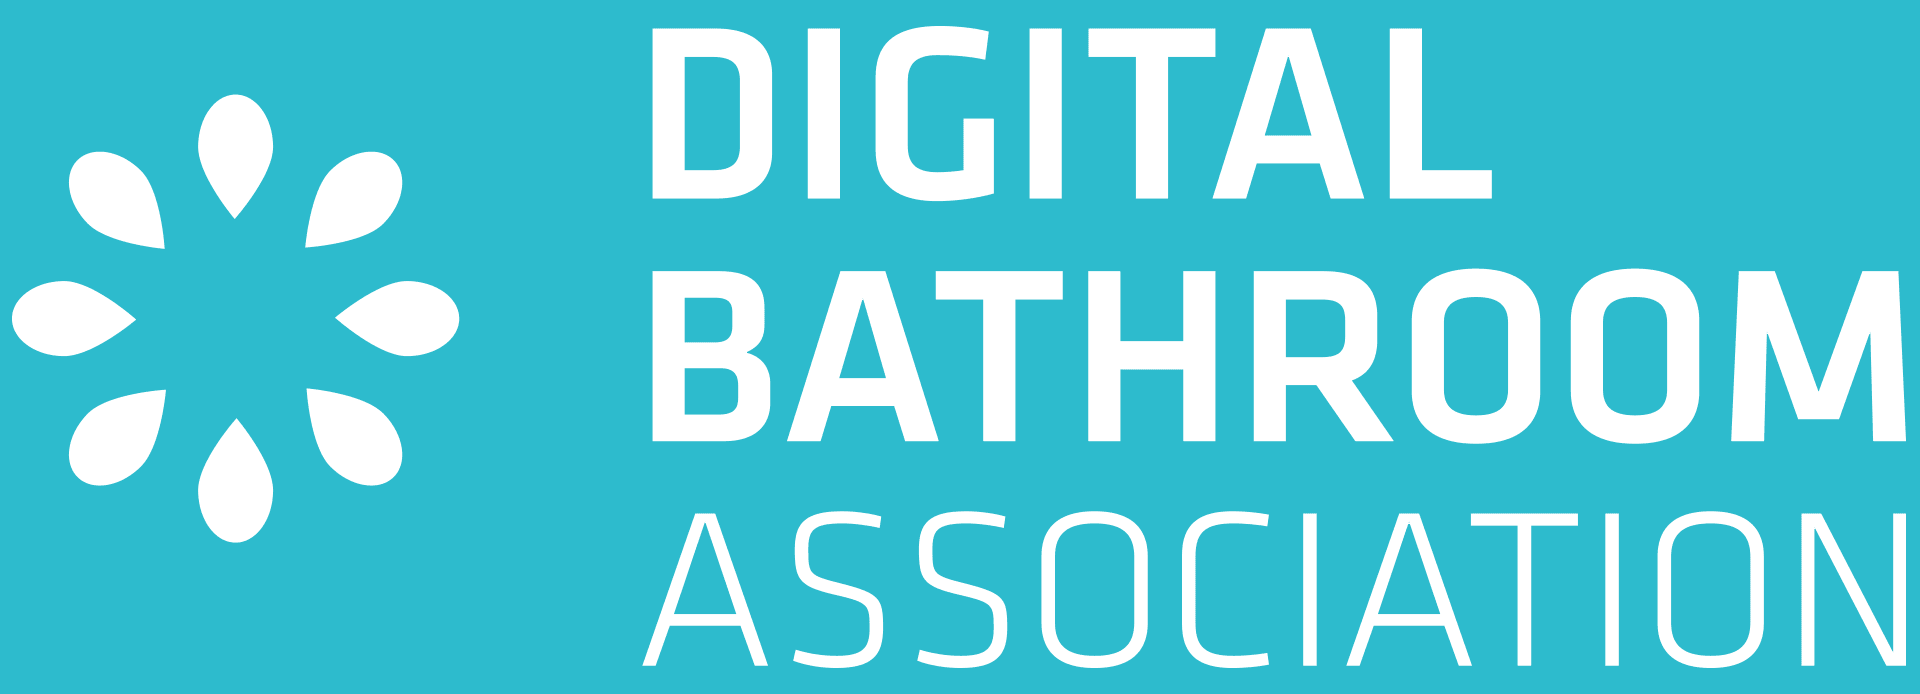 digital-bathroom-association-logo